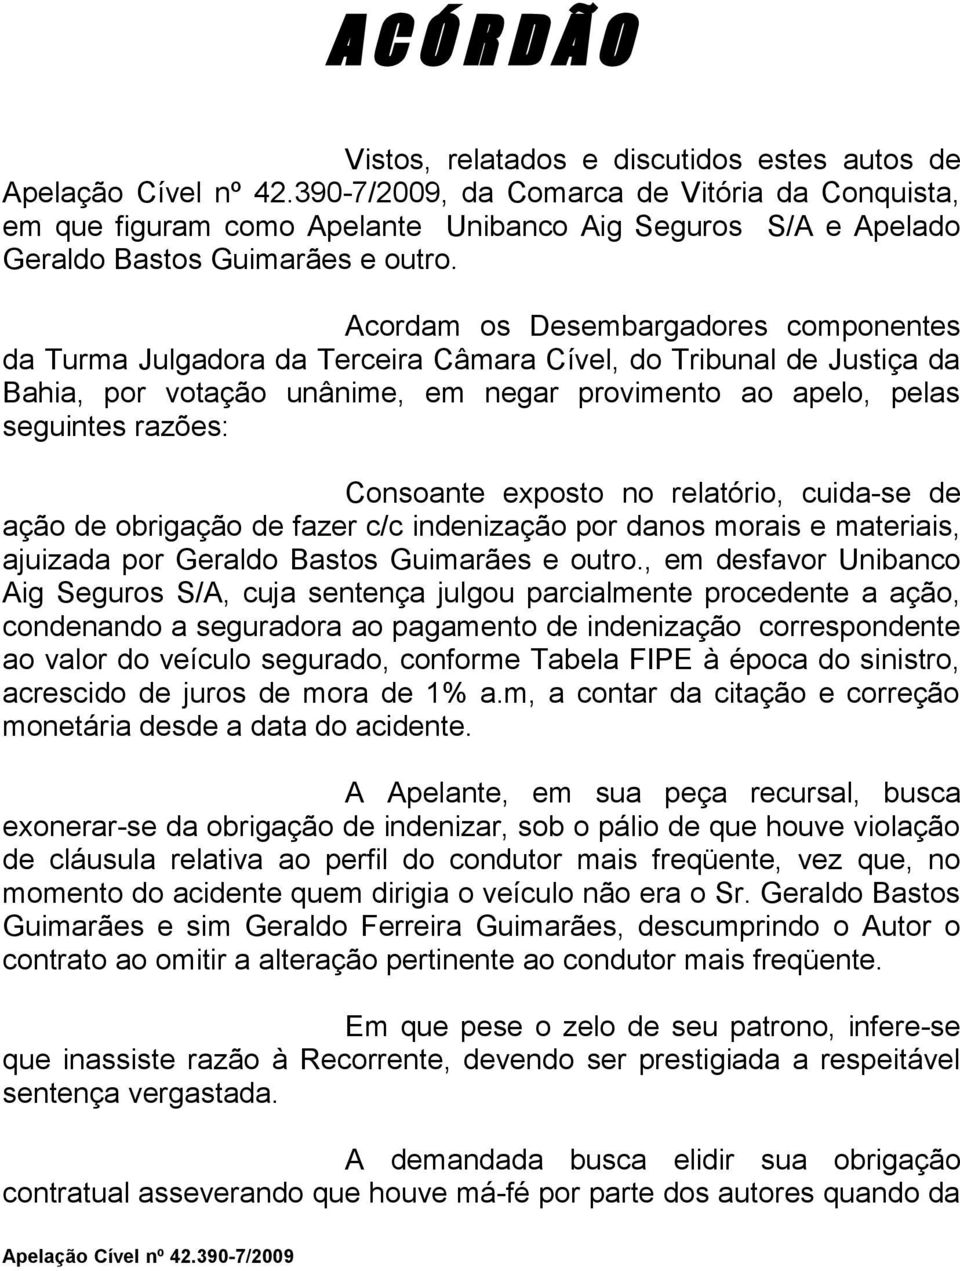 Consoante exposto no relatório, cuida-se de ação de obrigação de fazer c/c indenização por danos morais e materiais, ajuizada por Geraldo Bastos Guimarães e outro.